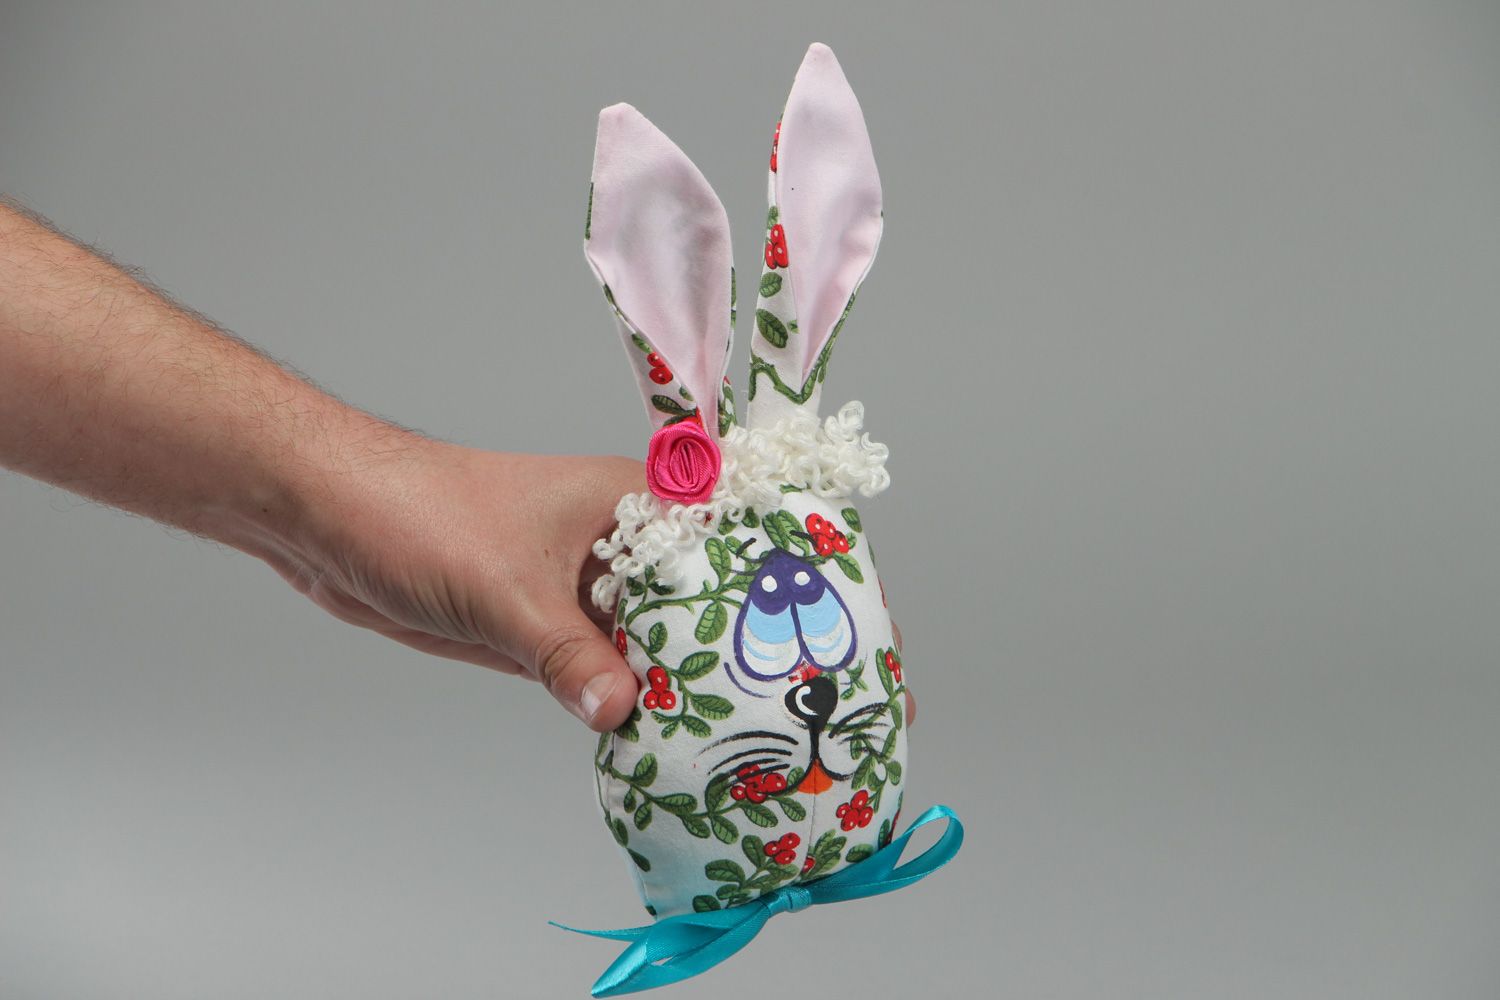 Мягкая игрушка из ткани пошитая вручную Пасхальный кролик фото 4